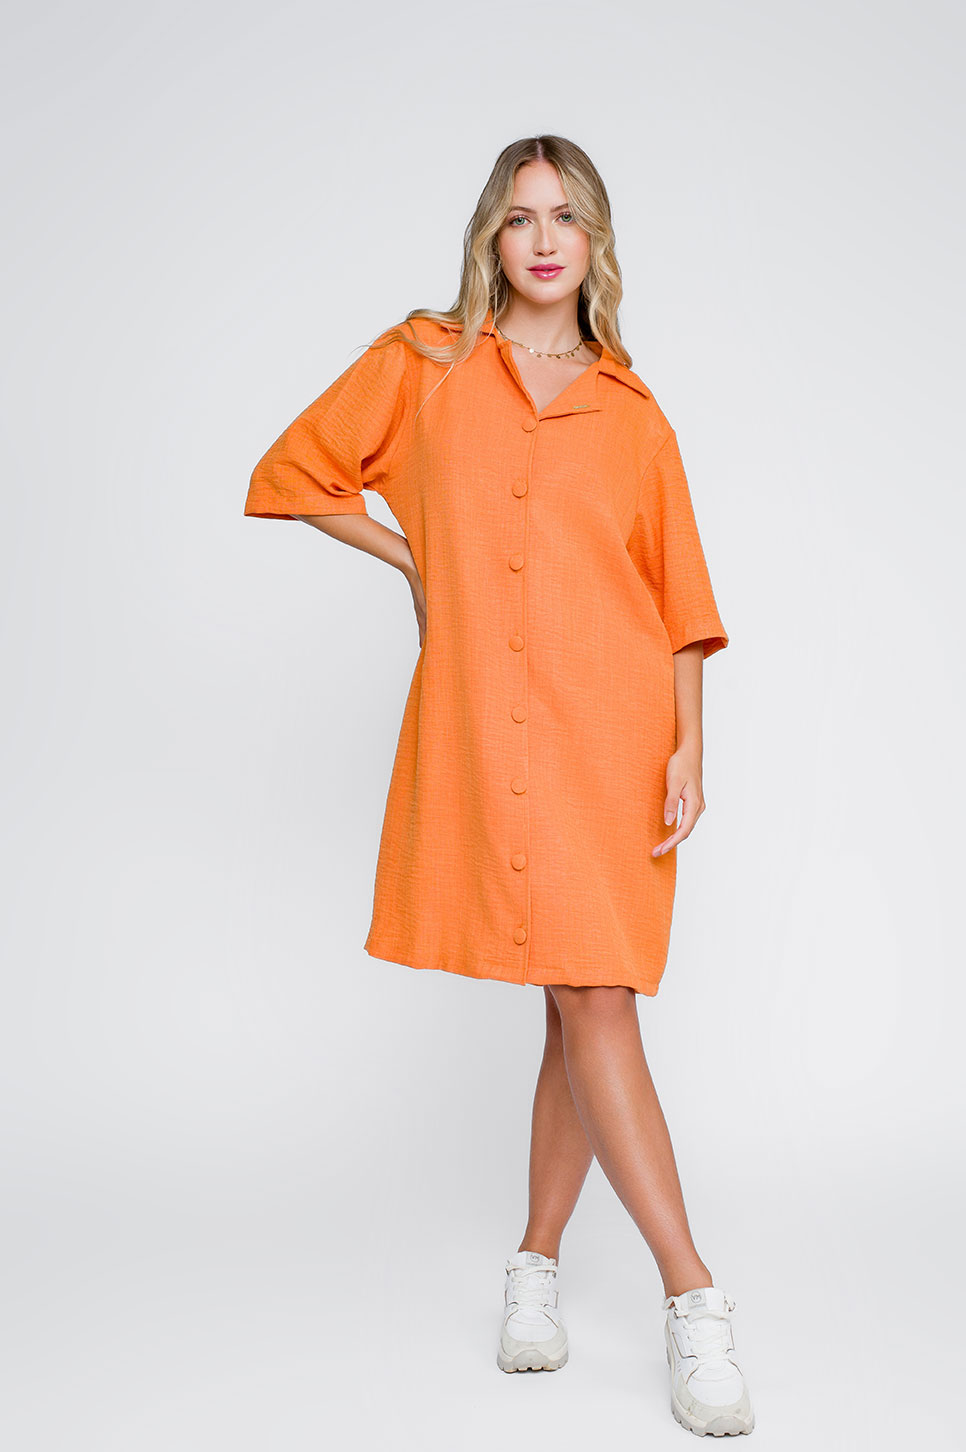 Camisão Feminino Orange Viscose Outwear